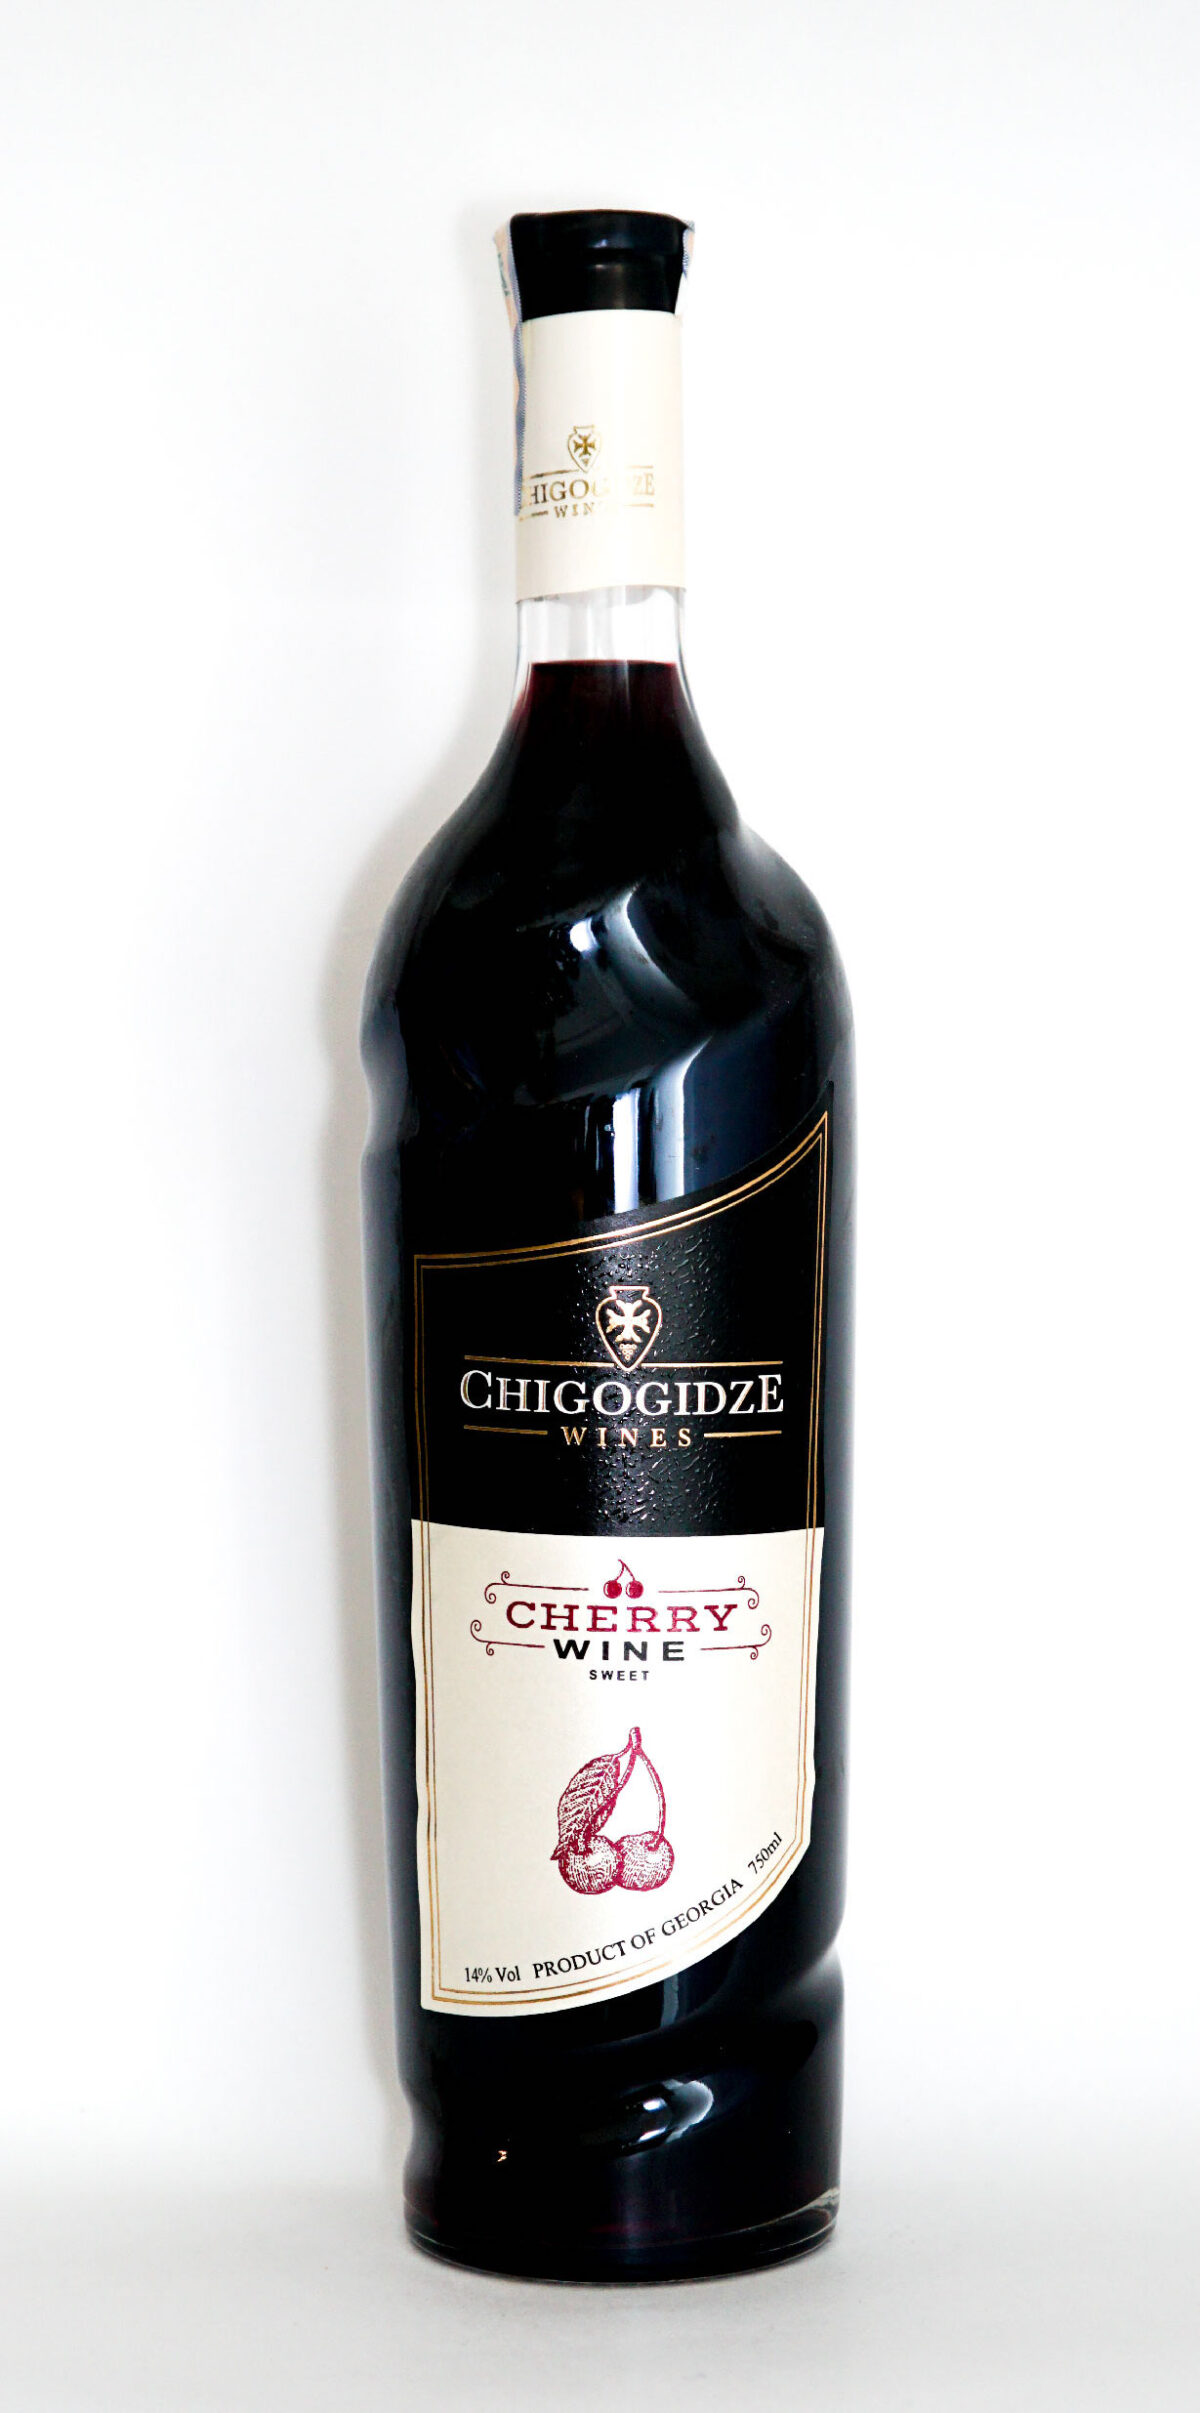 Вишневое вино 2018 от Чигогидзе